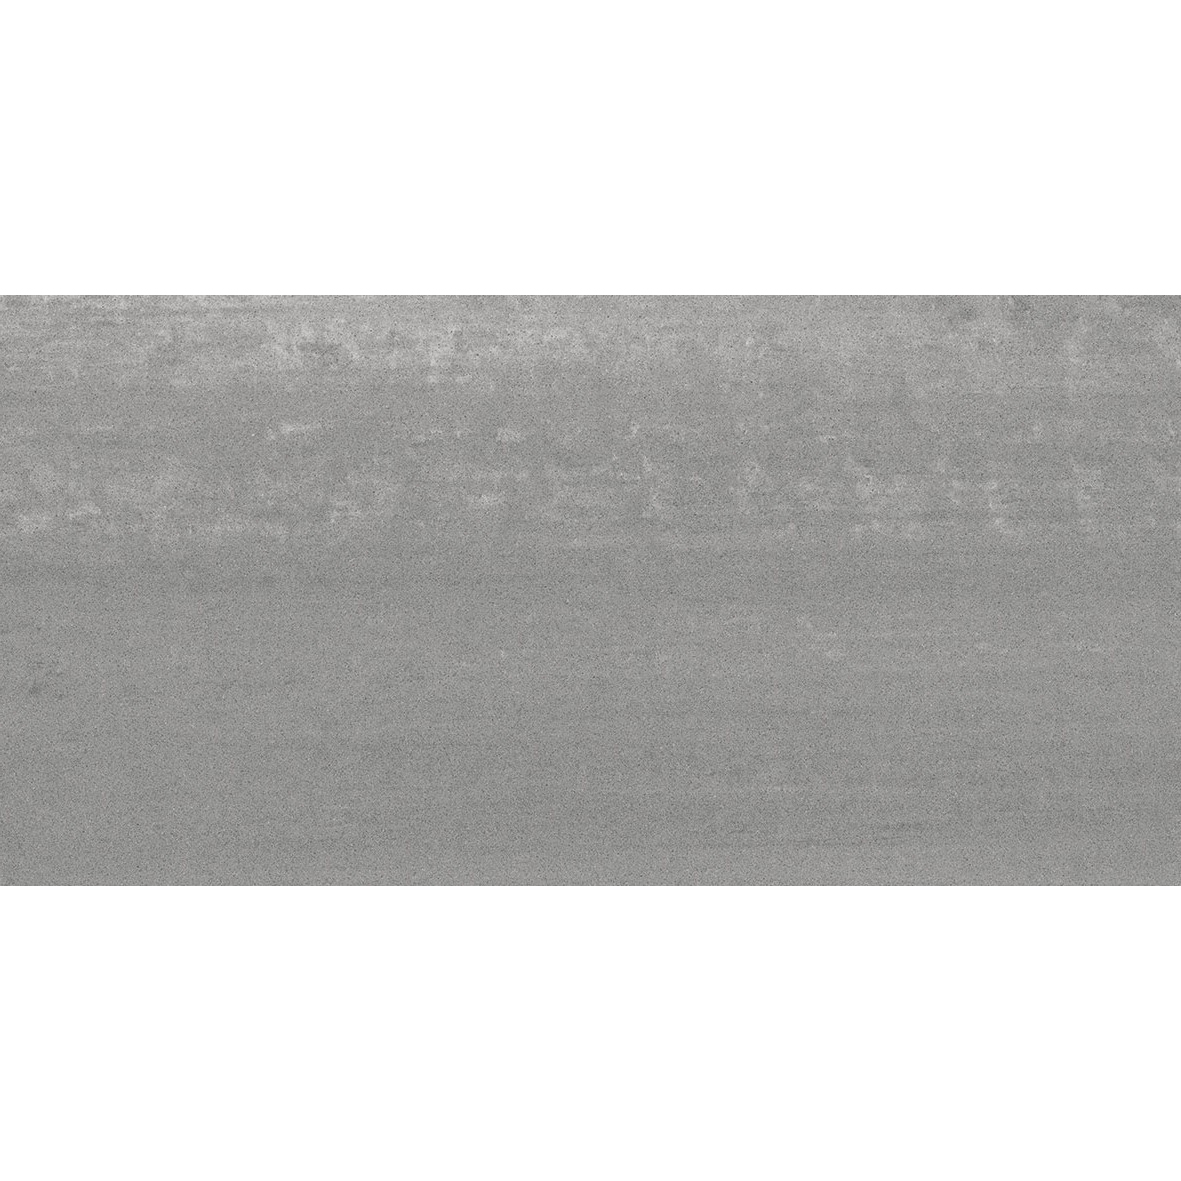 Плитка Kerama marazzi Про Дабл серый темный обрезной DD201000R 30х60 см плитка керамическая kerama marazzi коллекция маритимос 30х60 mp000018437